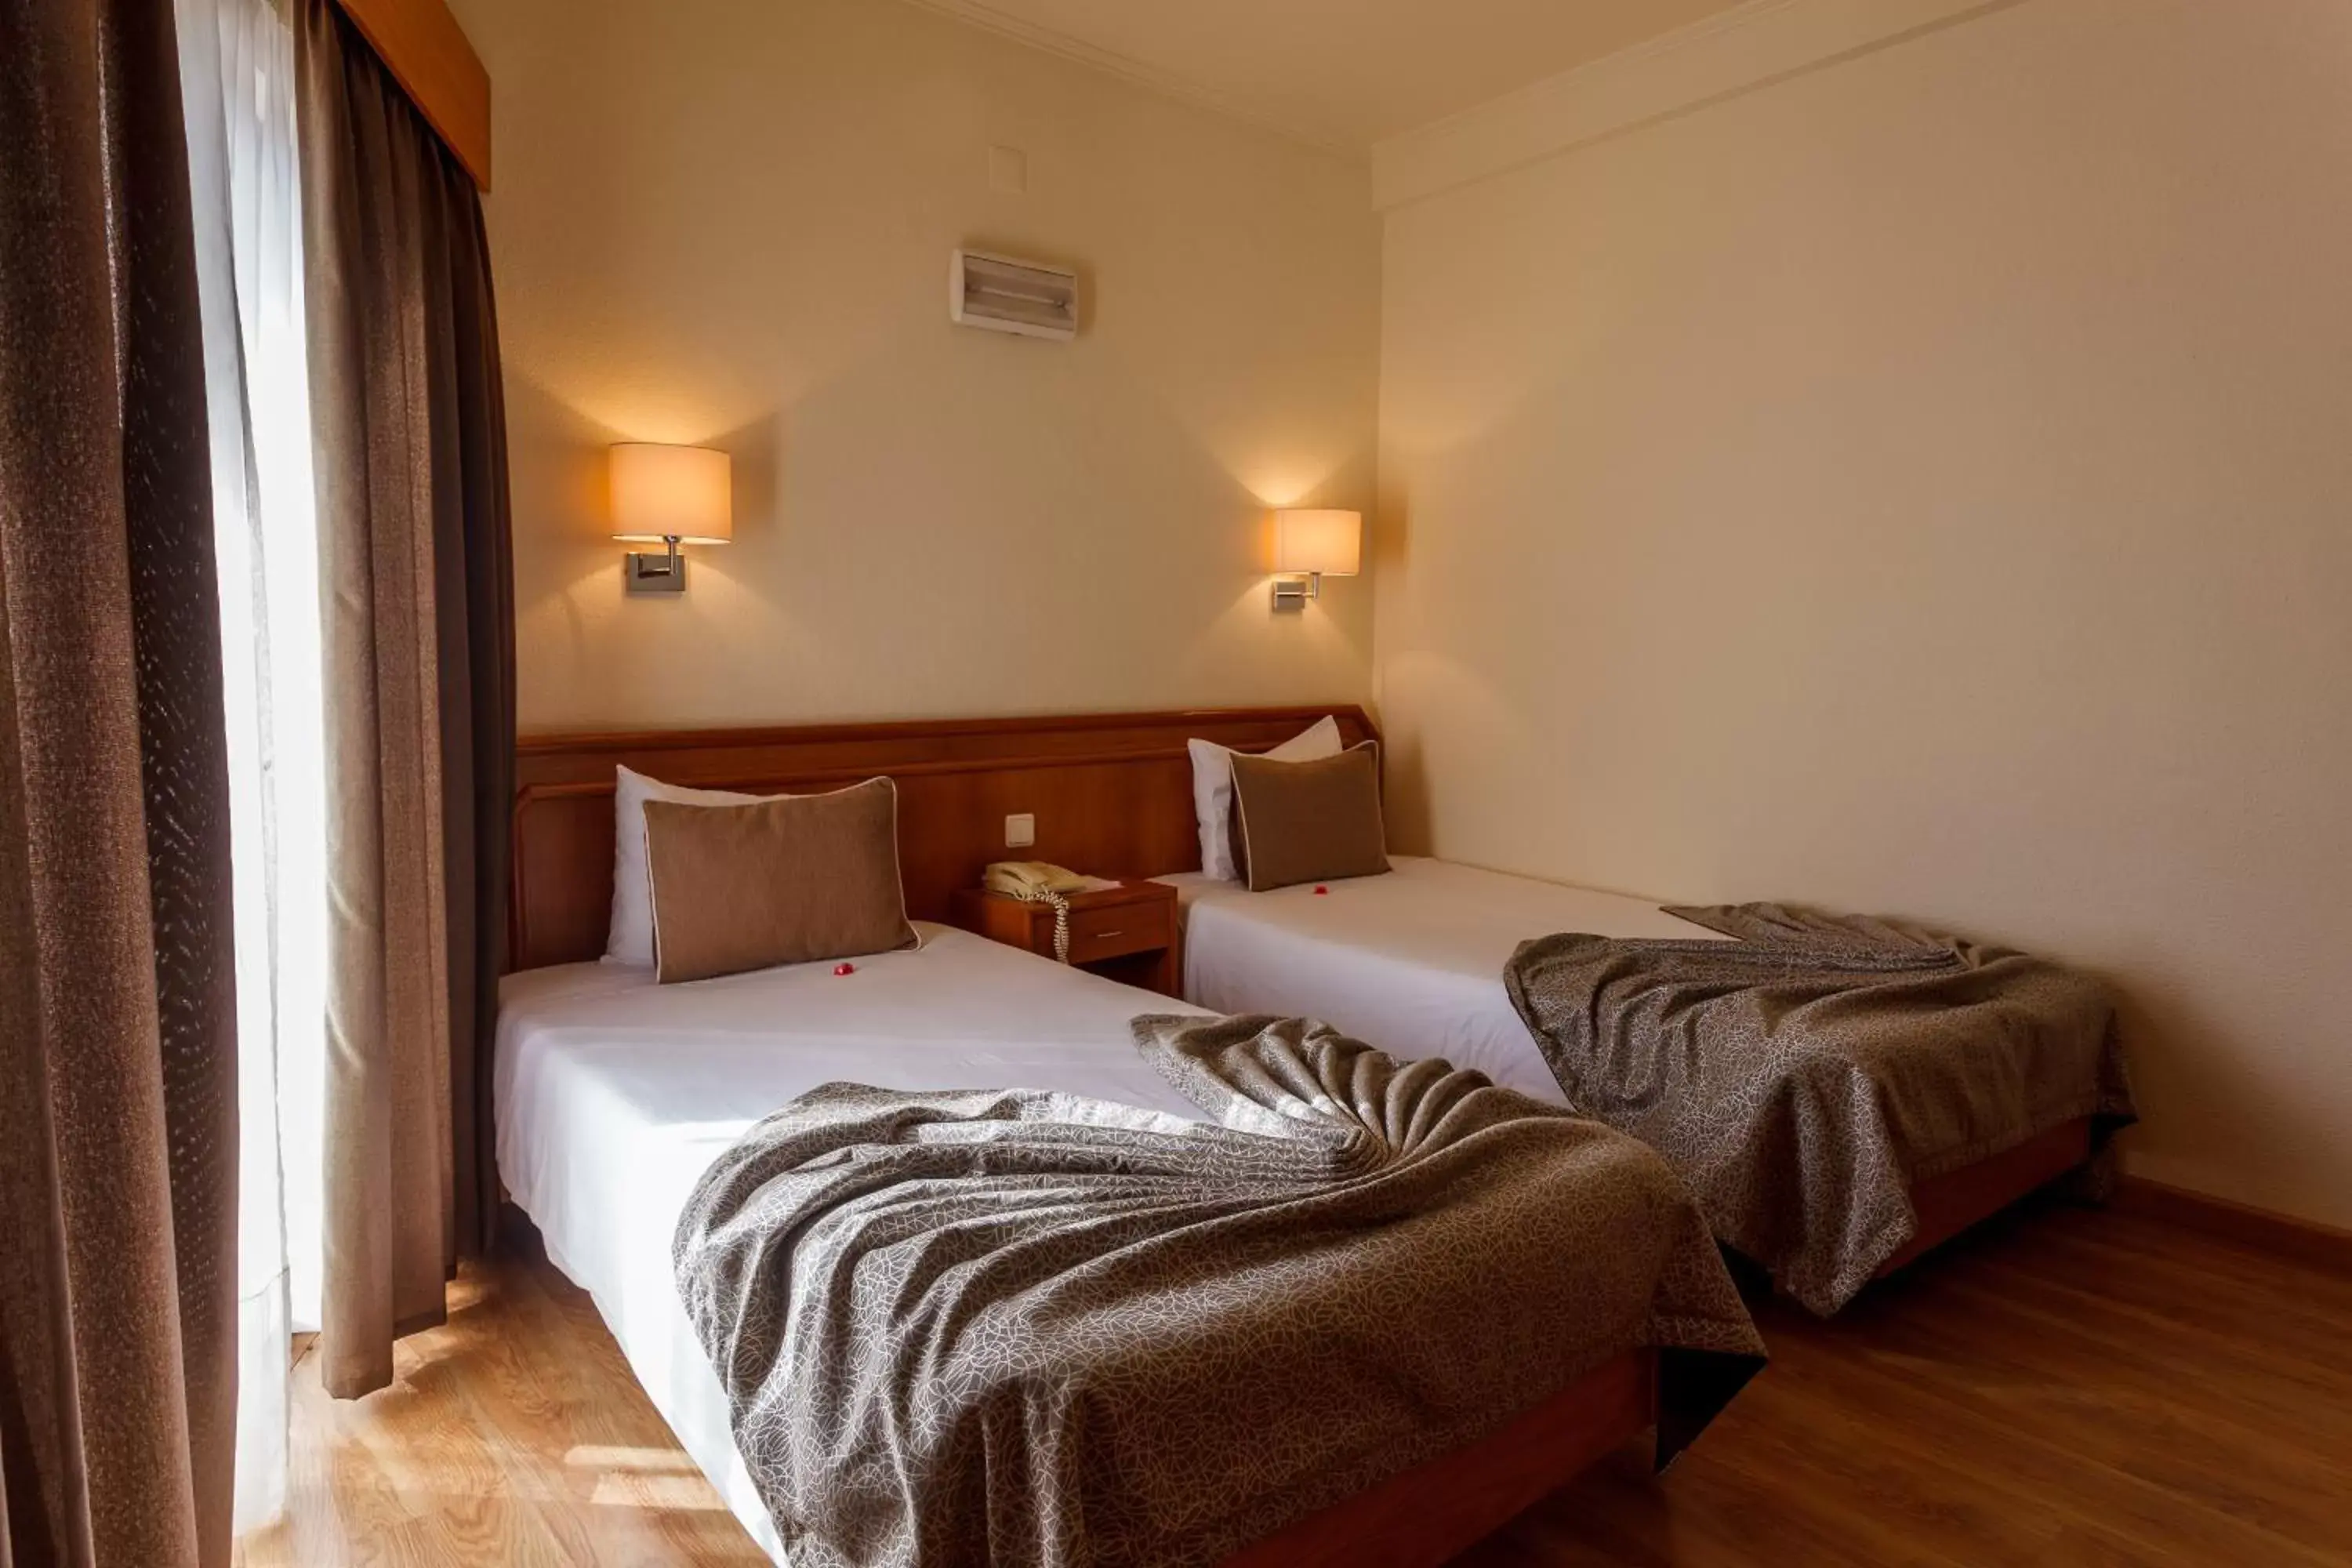 Bedroom, Room Photo in Hotel Sao Jorge Garden